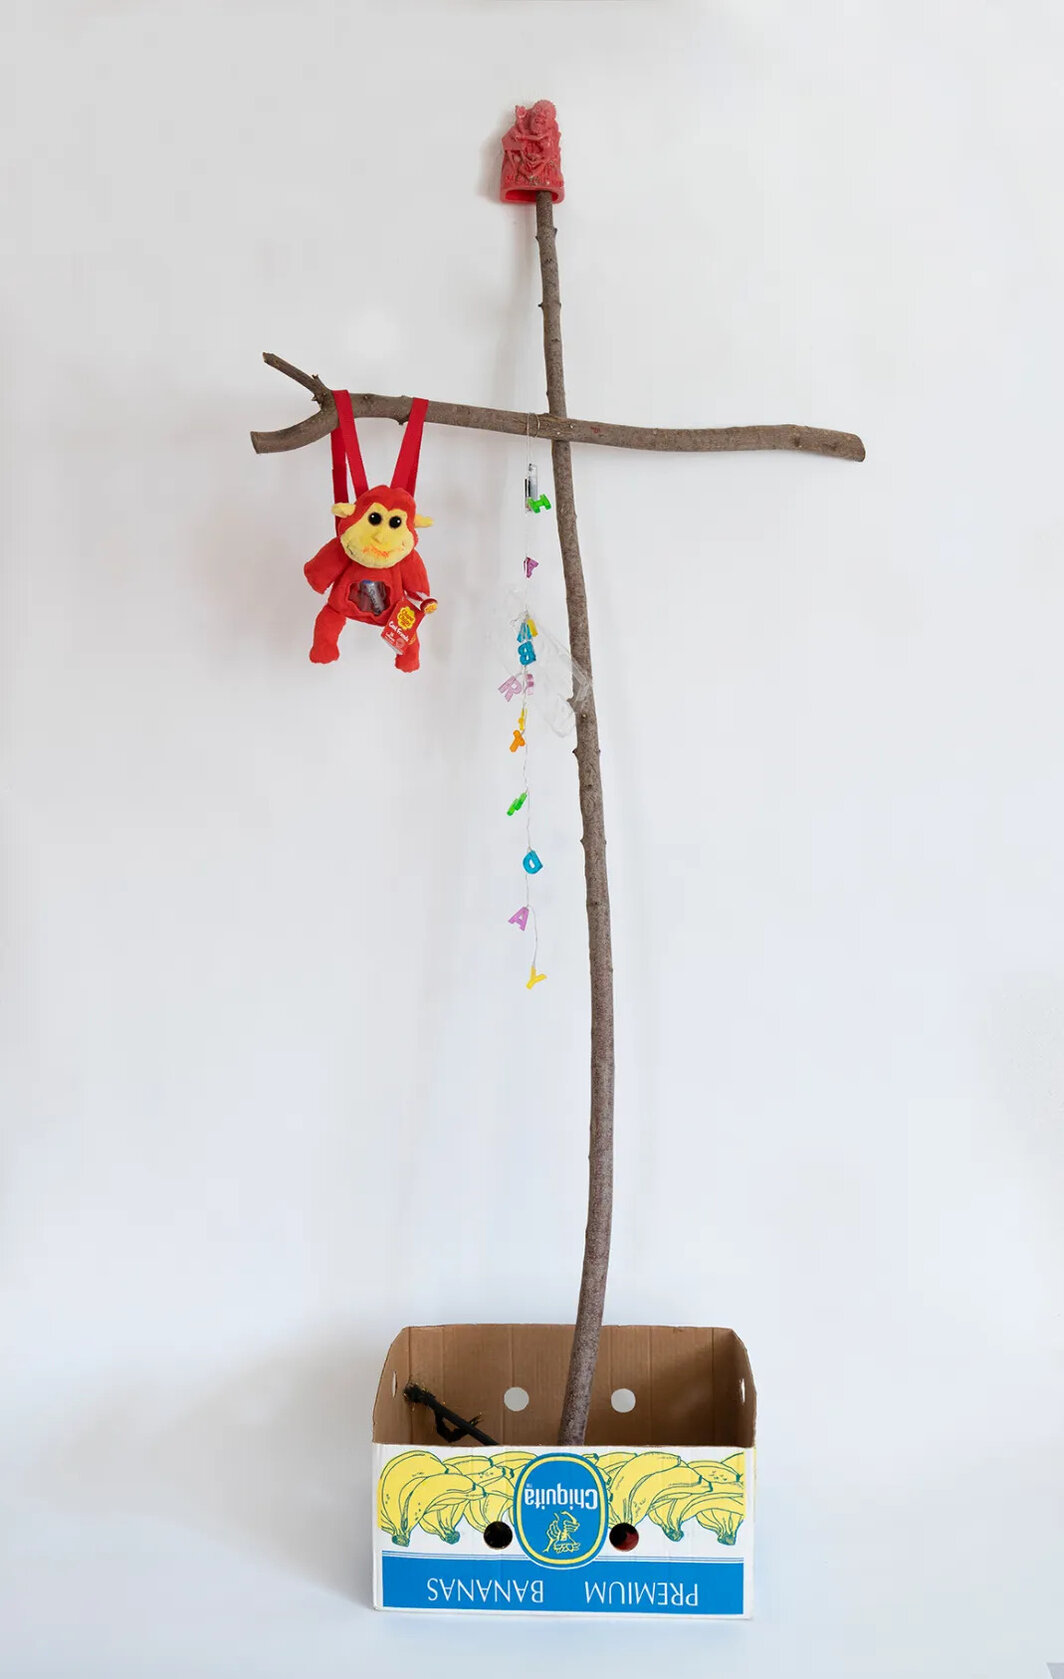 李“刮擦”佩里，《十字架》（cross），2018-20 ，木、填充玩具动物、塑料字母、绳、塑料雕像、装有各种材料的盒子，尺寸可变. 